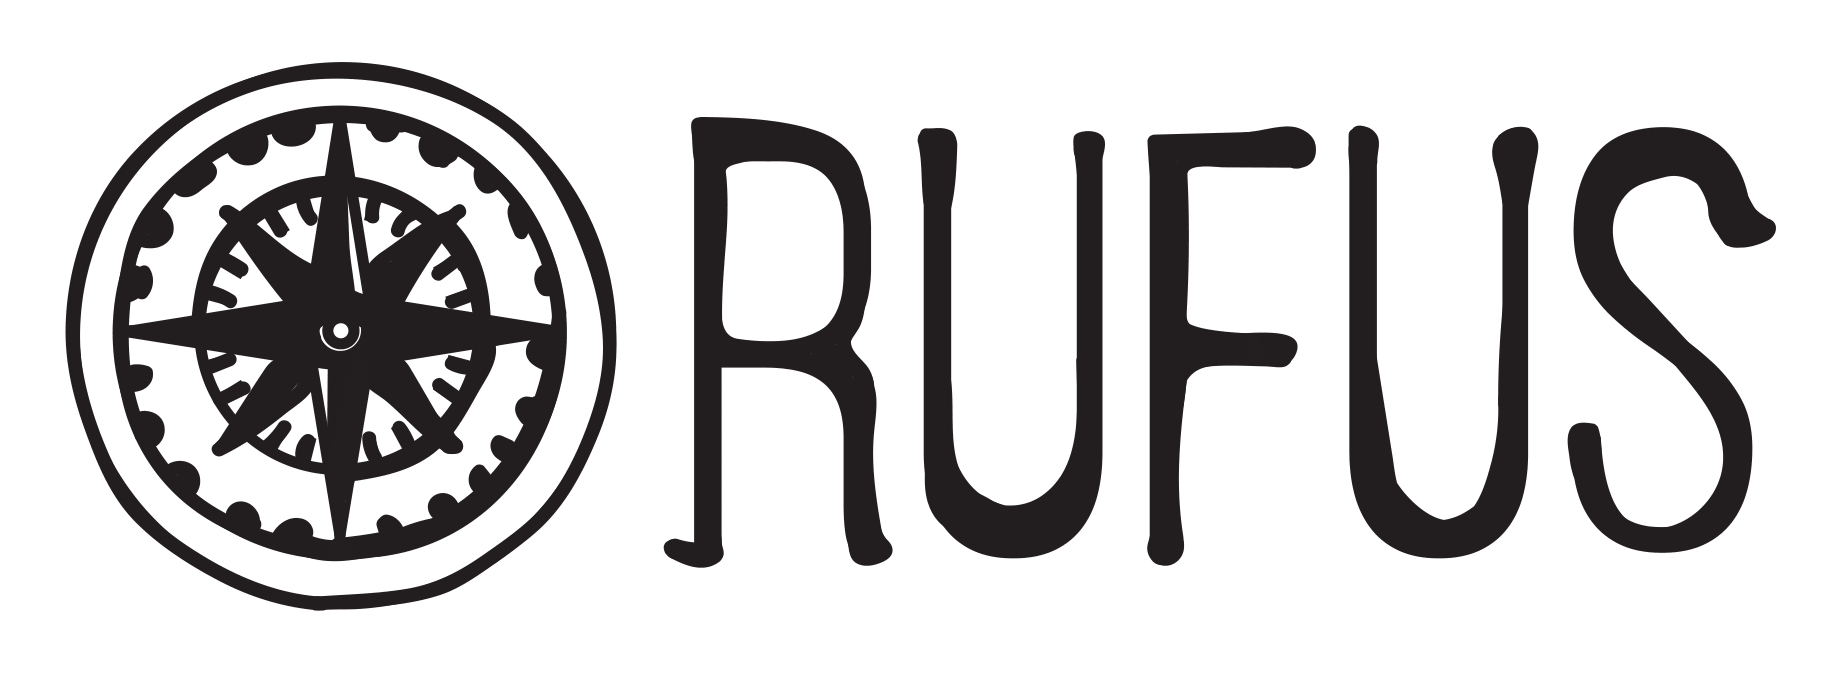 Rufus logo 